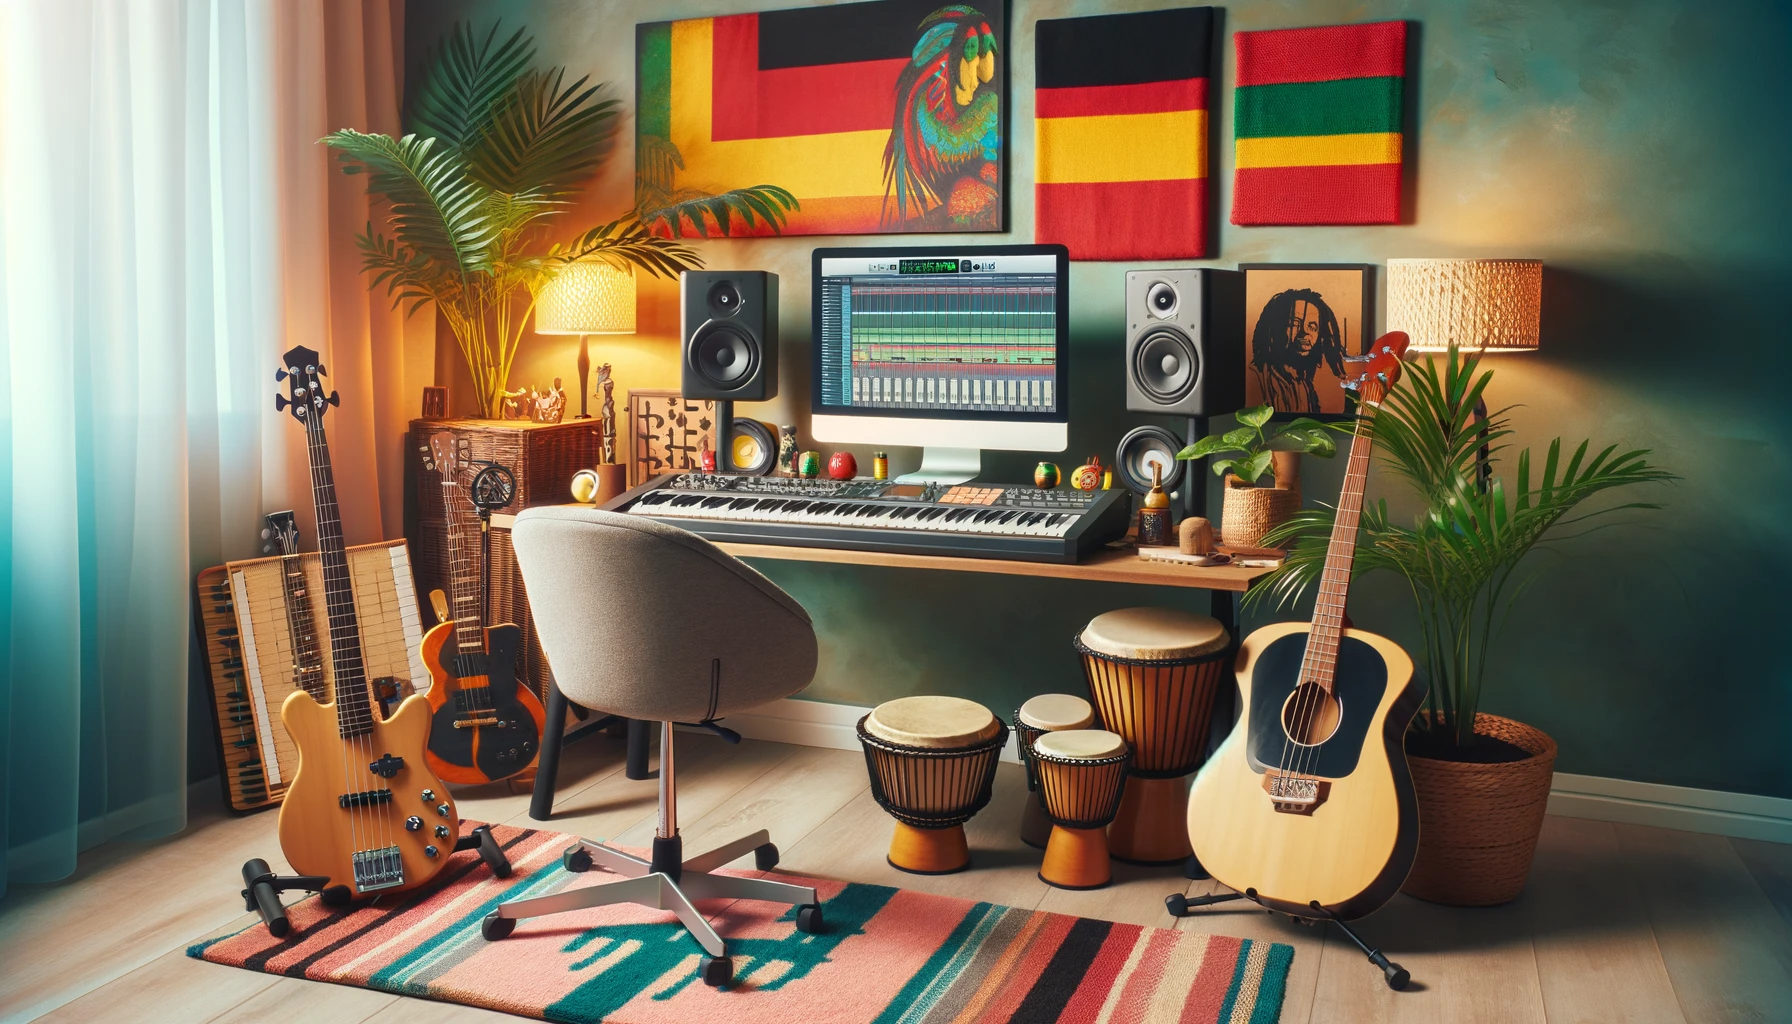 Domowe studio do produkcji muzyki reggae z komputerem, klawiaturą MIDI, gitarą basową, bongosami i mikrofonem, urządzone w stylu karaibskim.